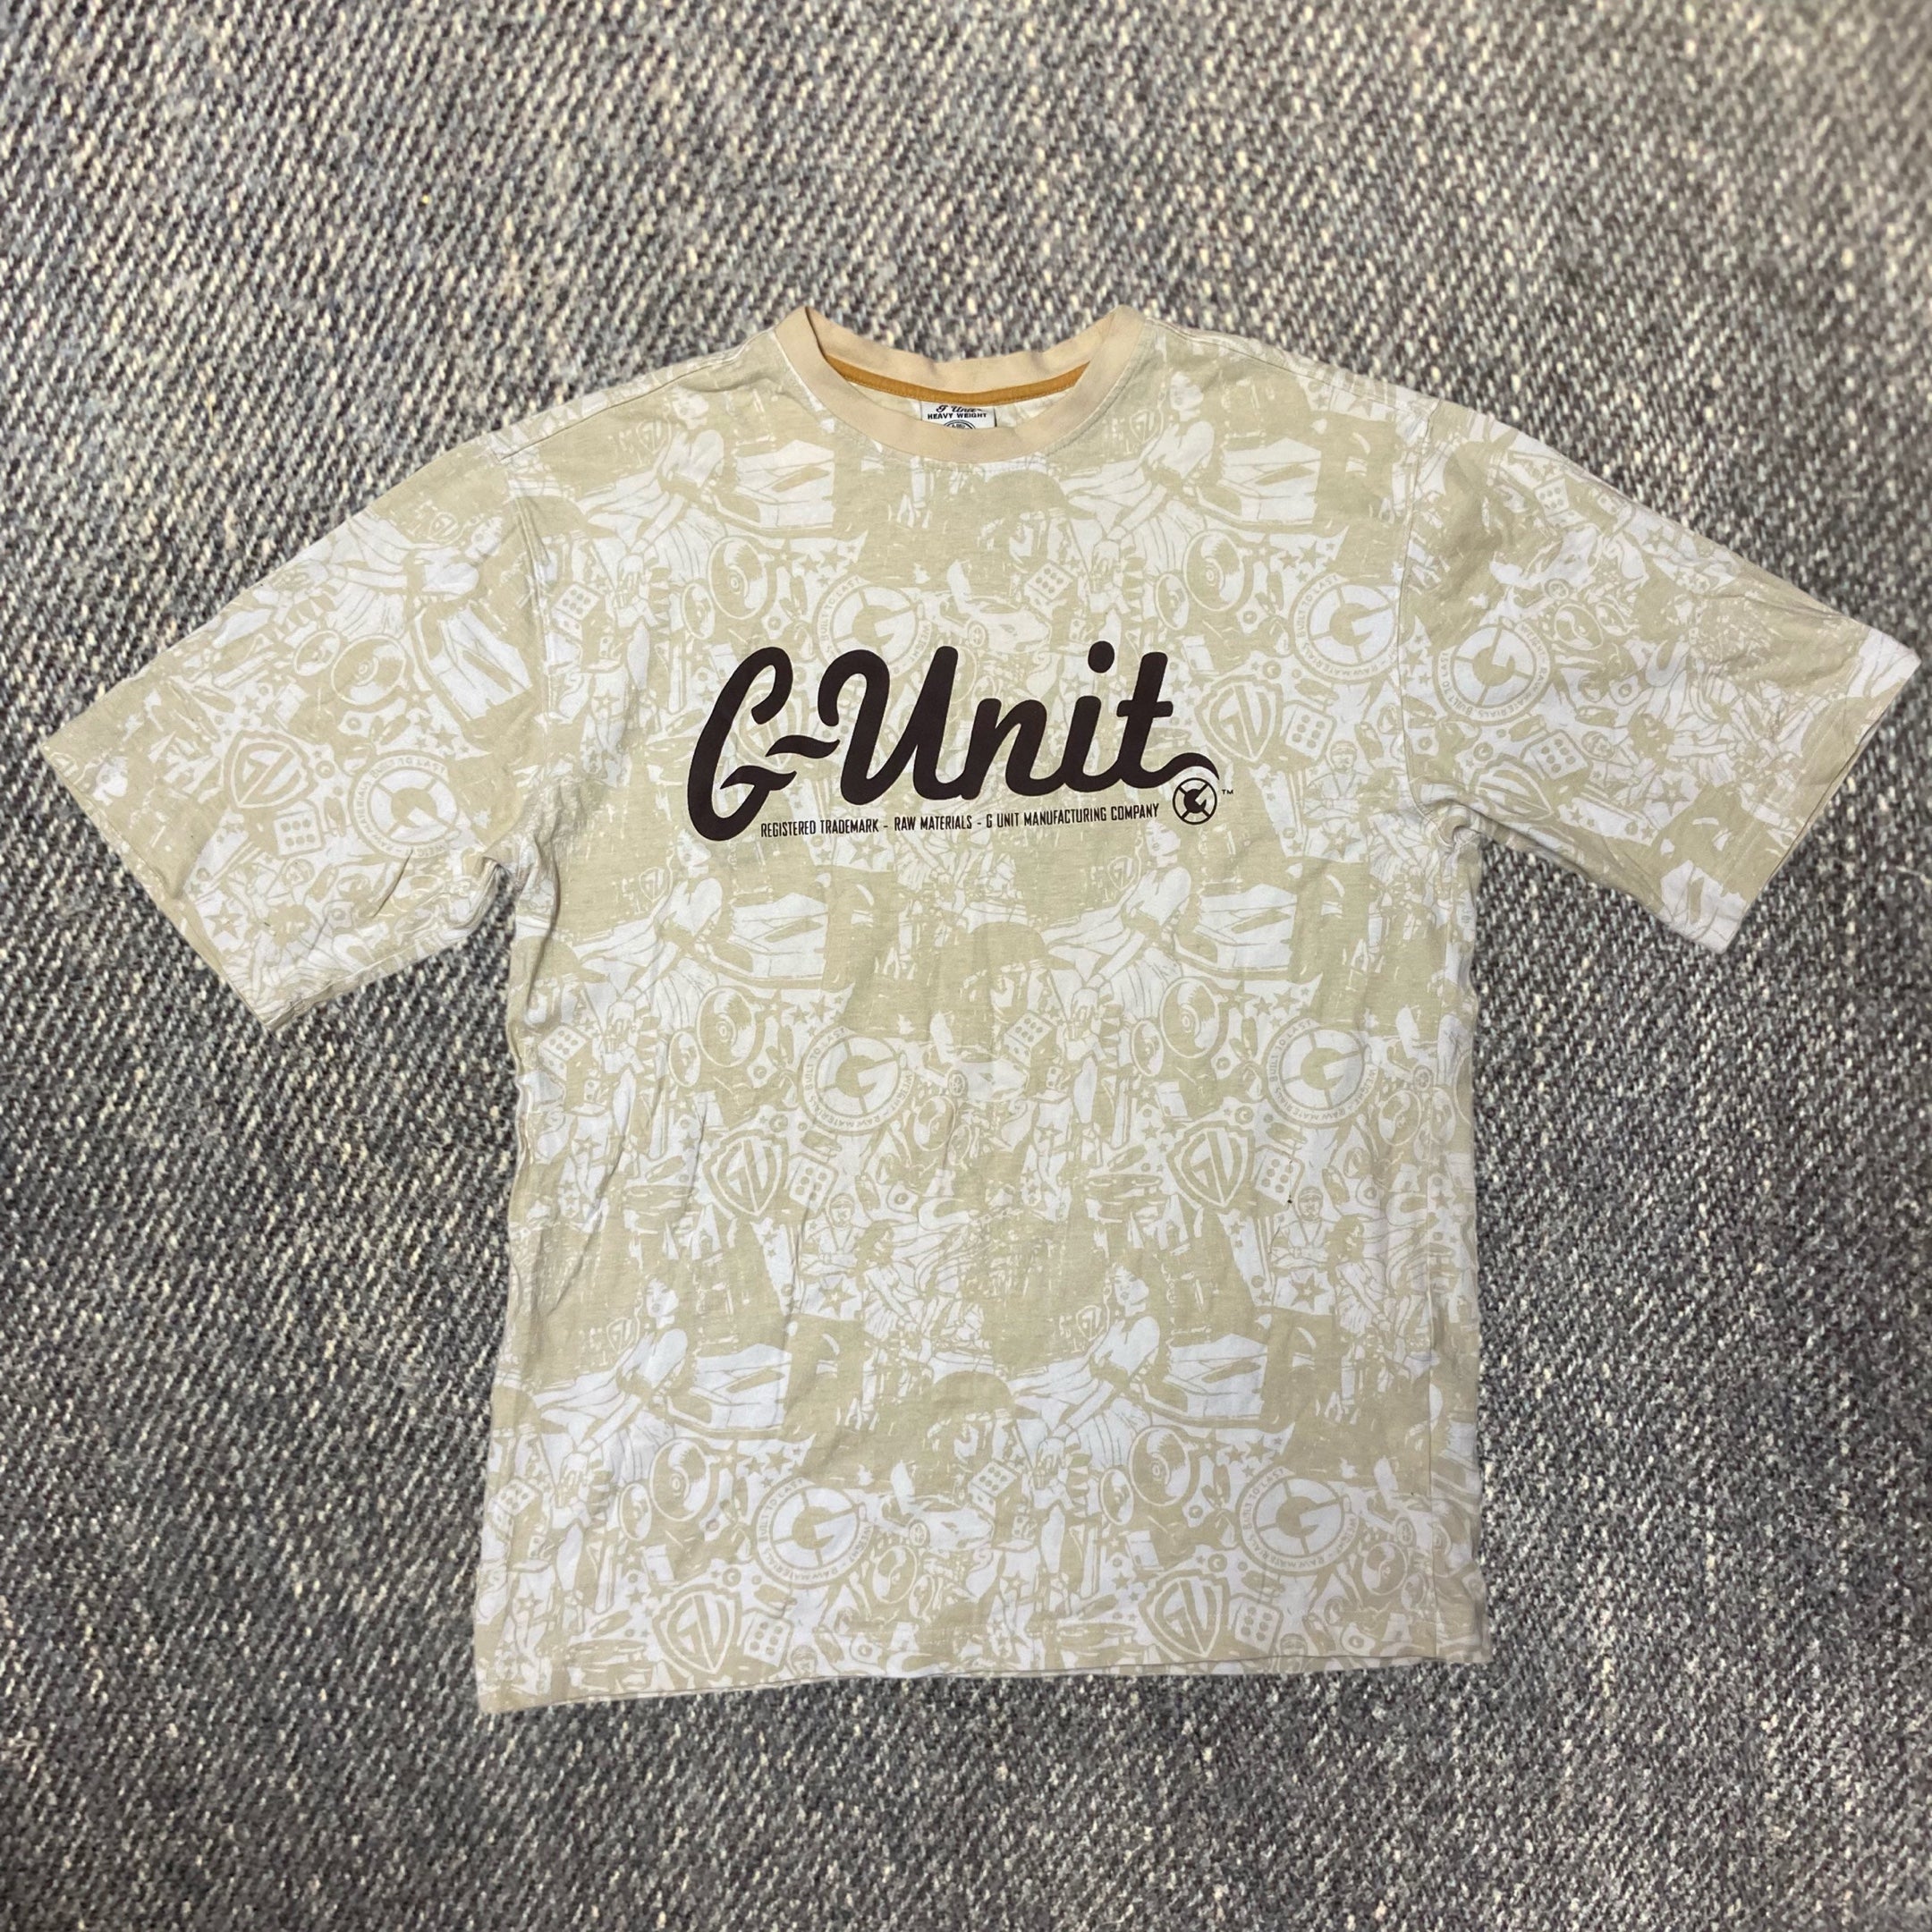 T-shirt G-unit